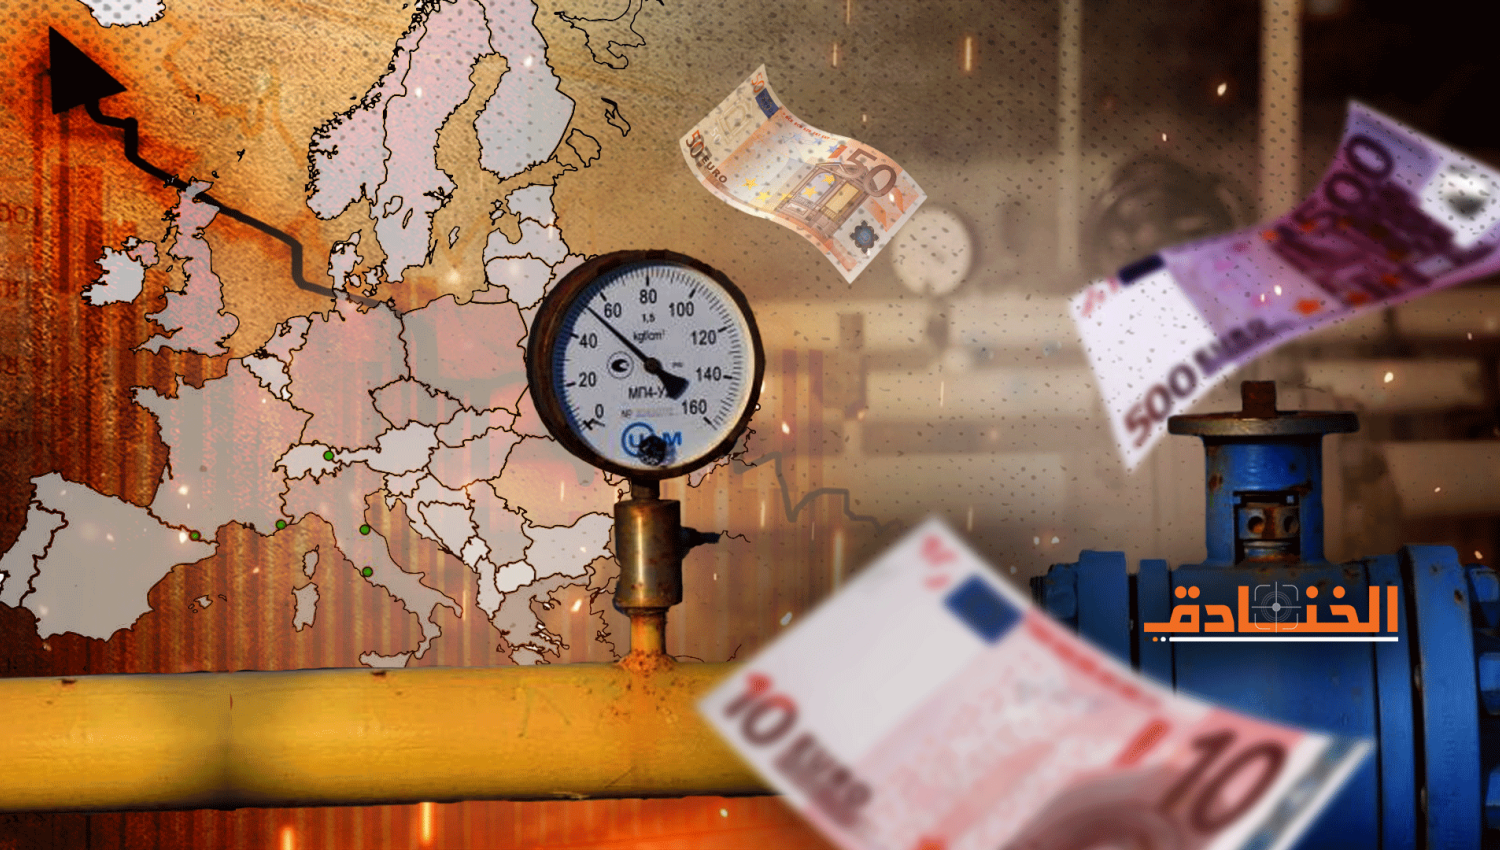 ارتفاع أسعار الطاقة والجفاف في اوروبا: اجتماع عوامل الأزمة 